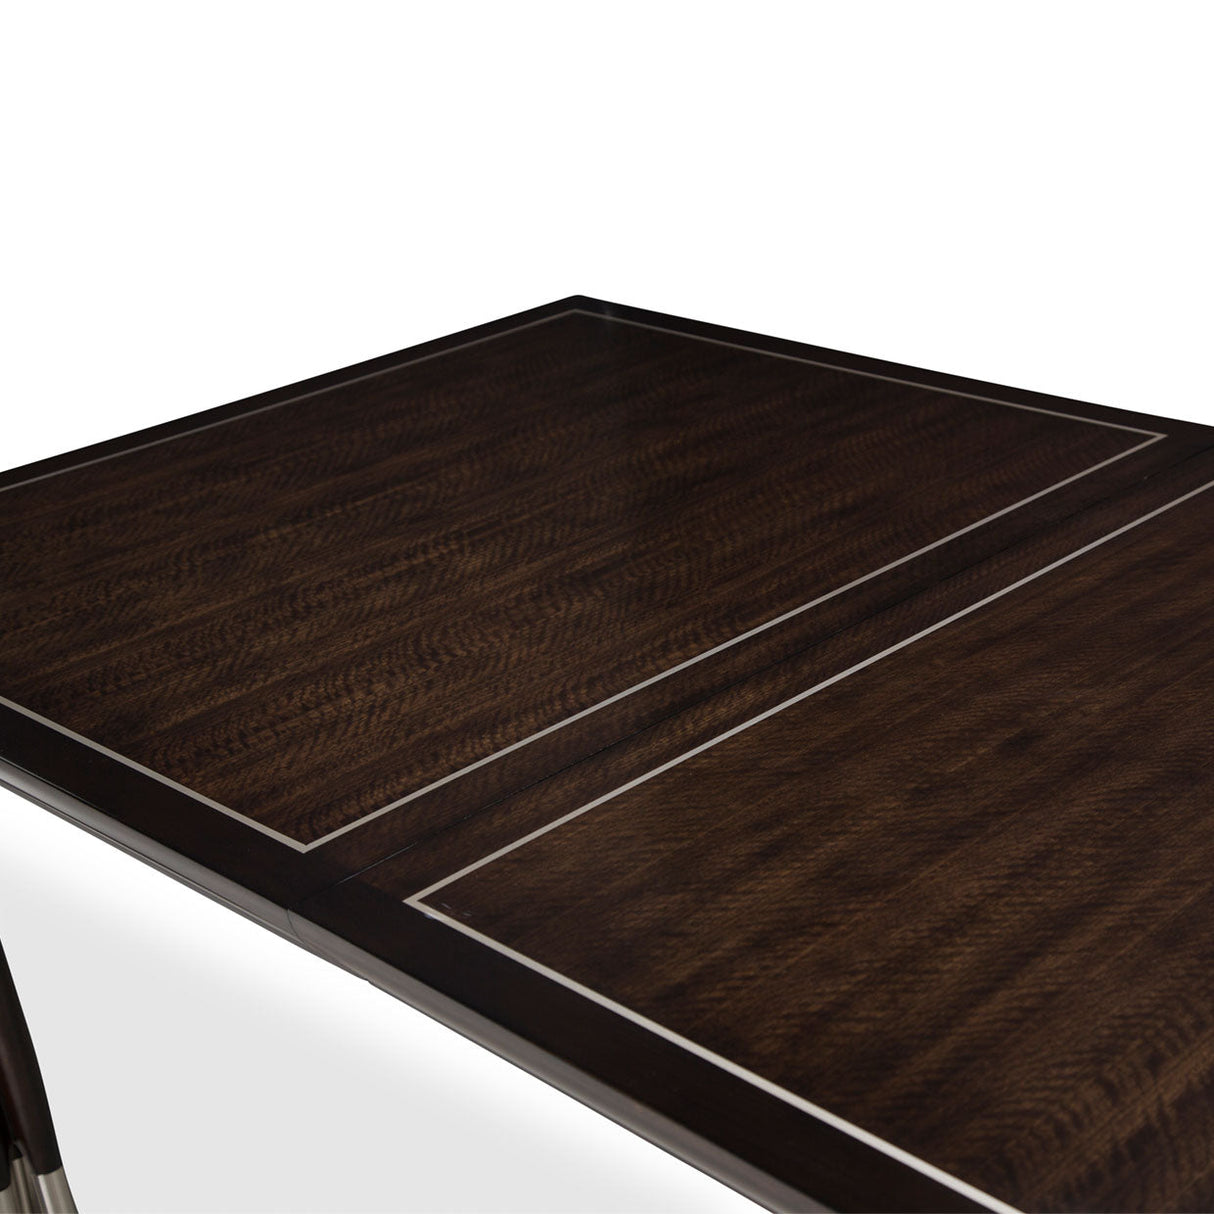 Aico Furniture - Paris Chic 5 Piece Rectangular Dining Table Set In Espresso - N9003000-409-5Set